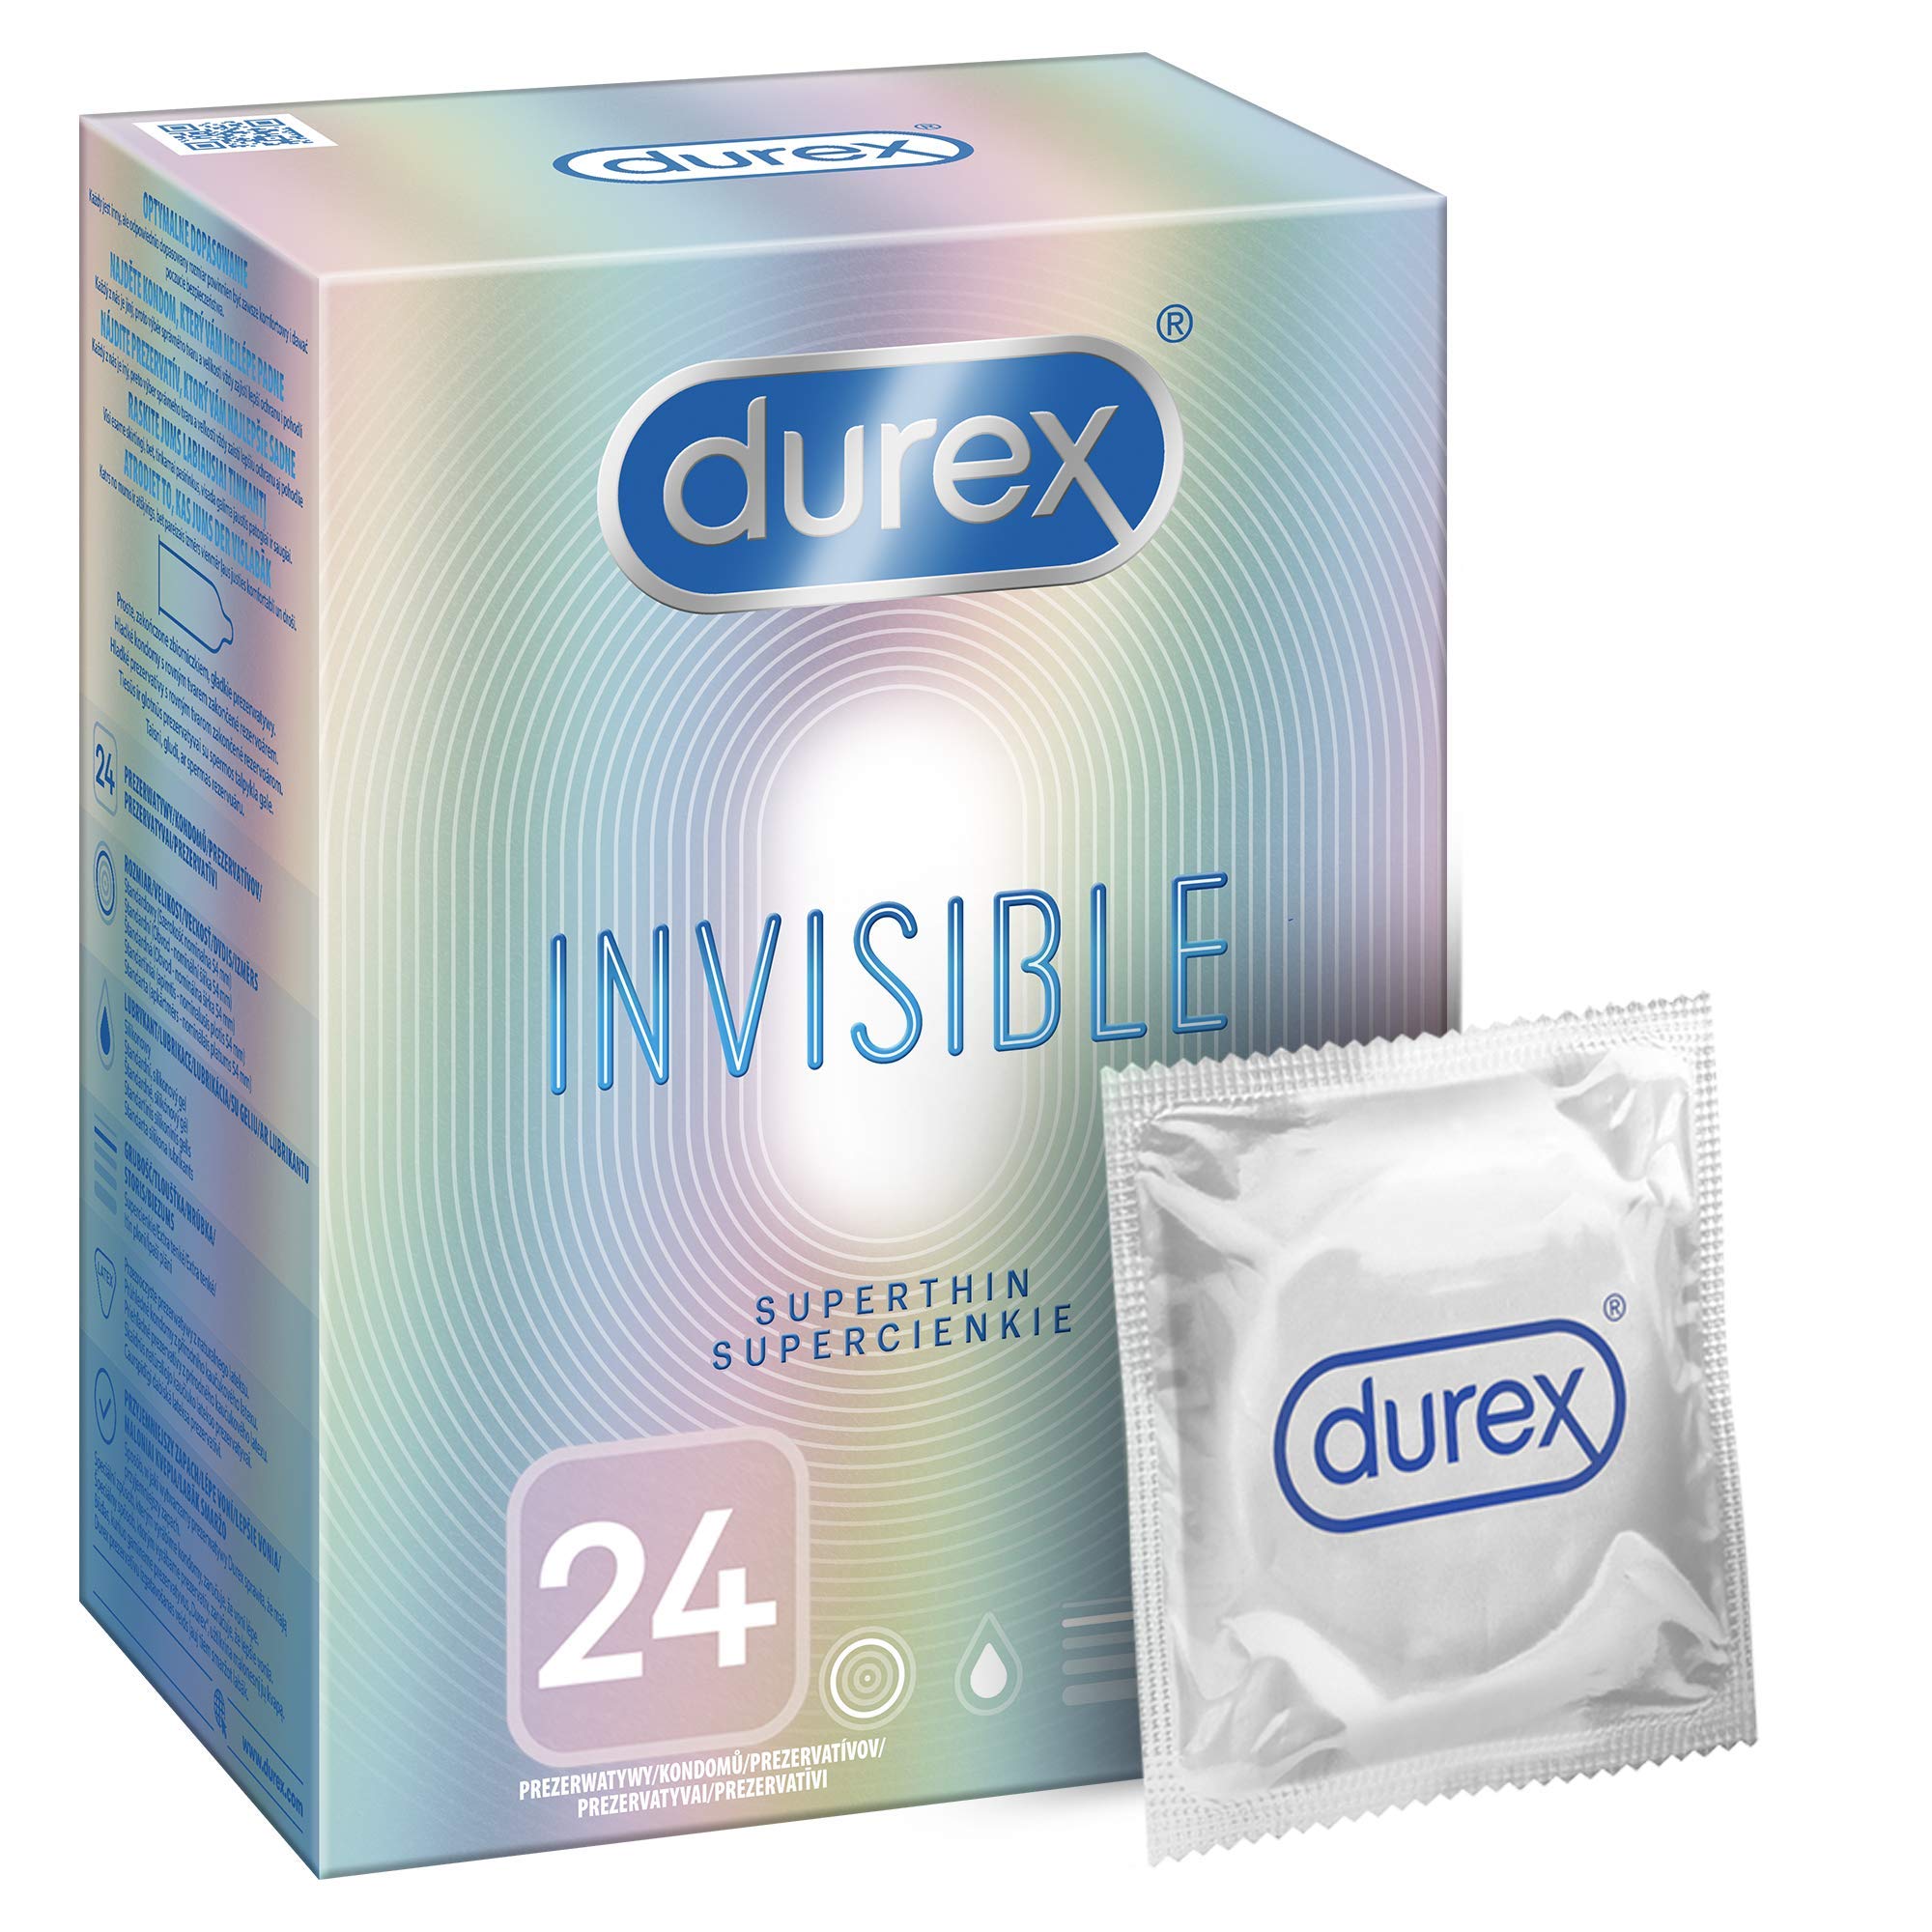 Durex Invisible Kondome – Kondome extra dünn für intensives Empfinden beim gemeinsamen Liebesspiel (Extra Sensitive, 24 Stück)